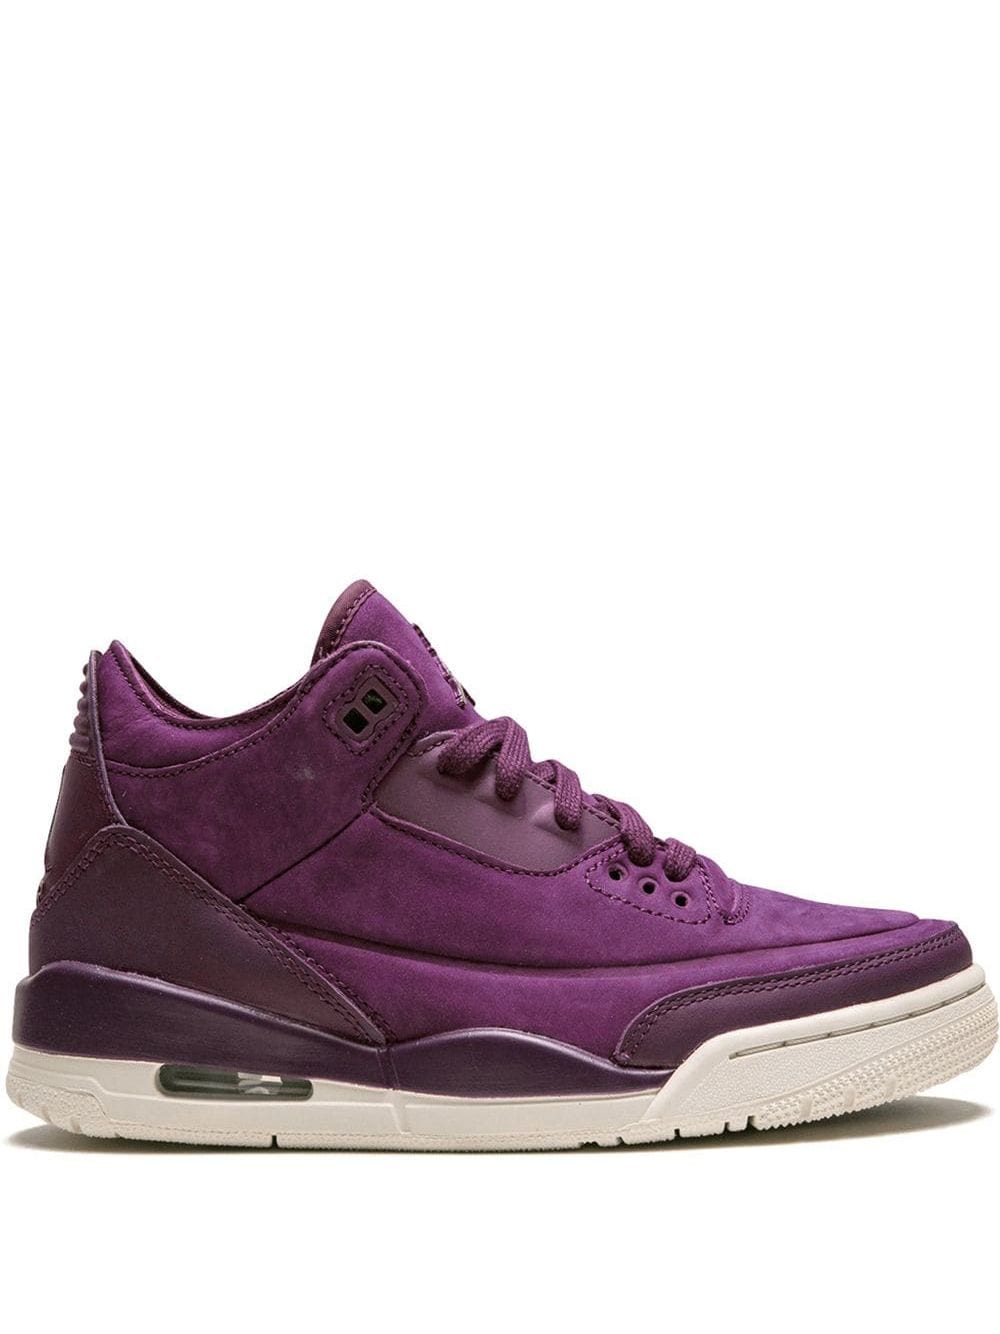 Jordan 'Air Jordan 3 Retro' Sneakers - Violett von Jordan